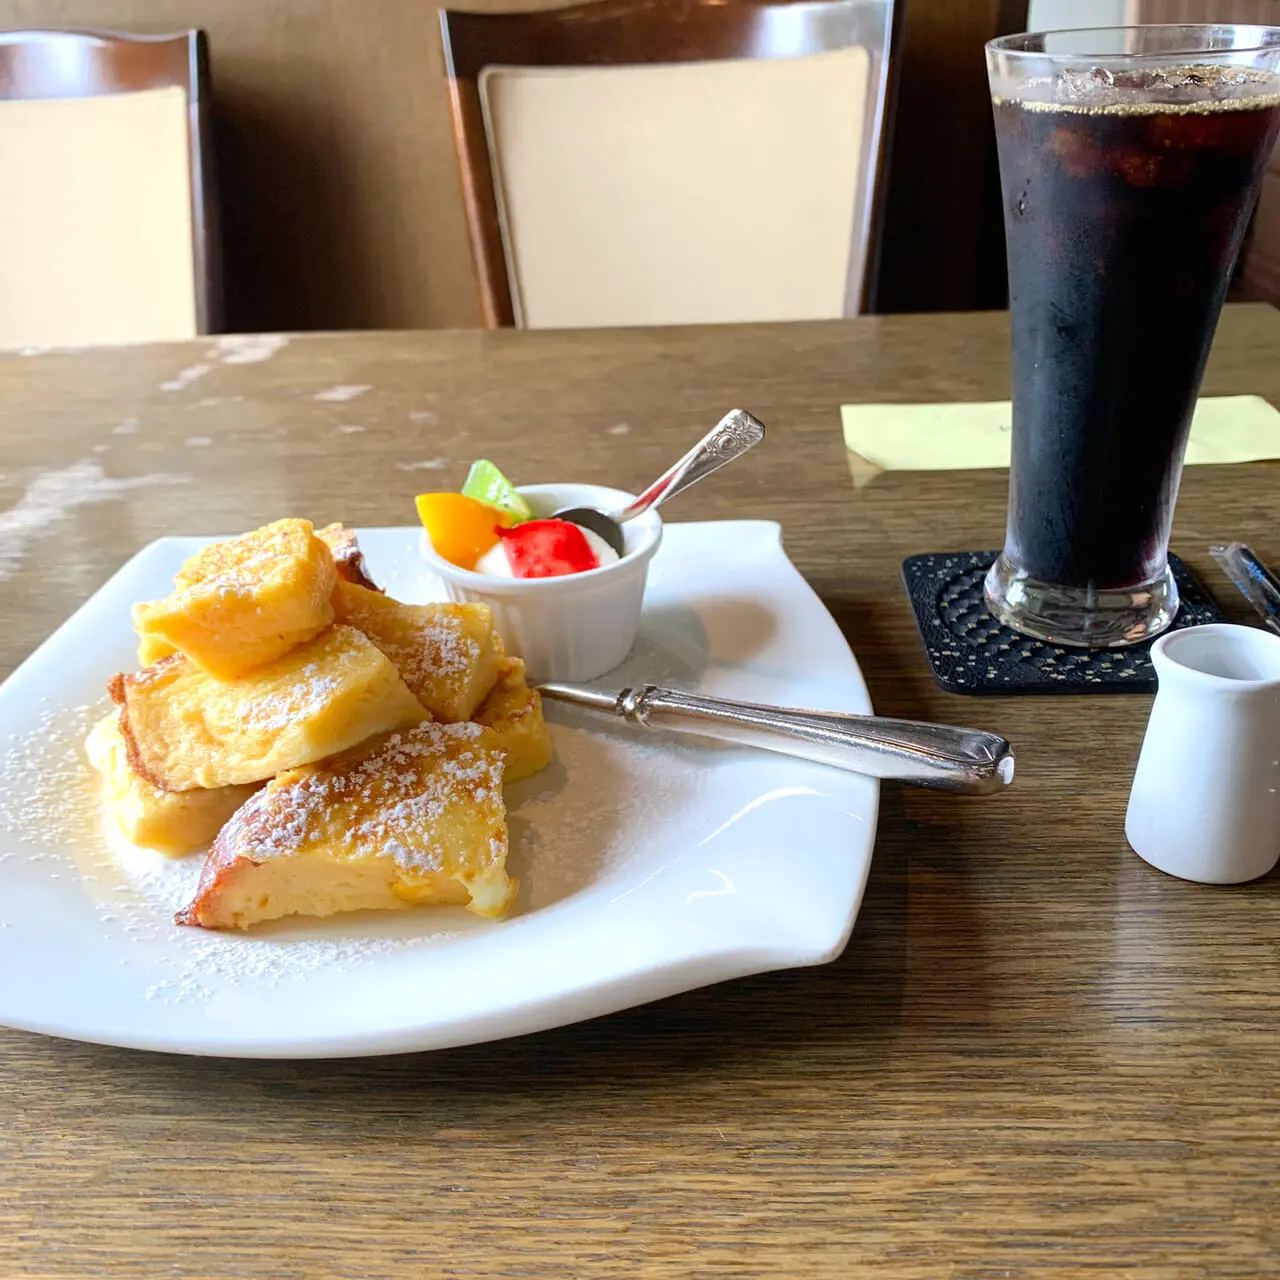 今治城の向かいにあるカフェ「ヴェルデュールカフェ」では落ち着いた空間で可愛いデザートが頂けます!!